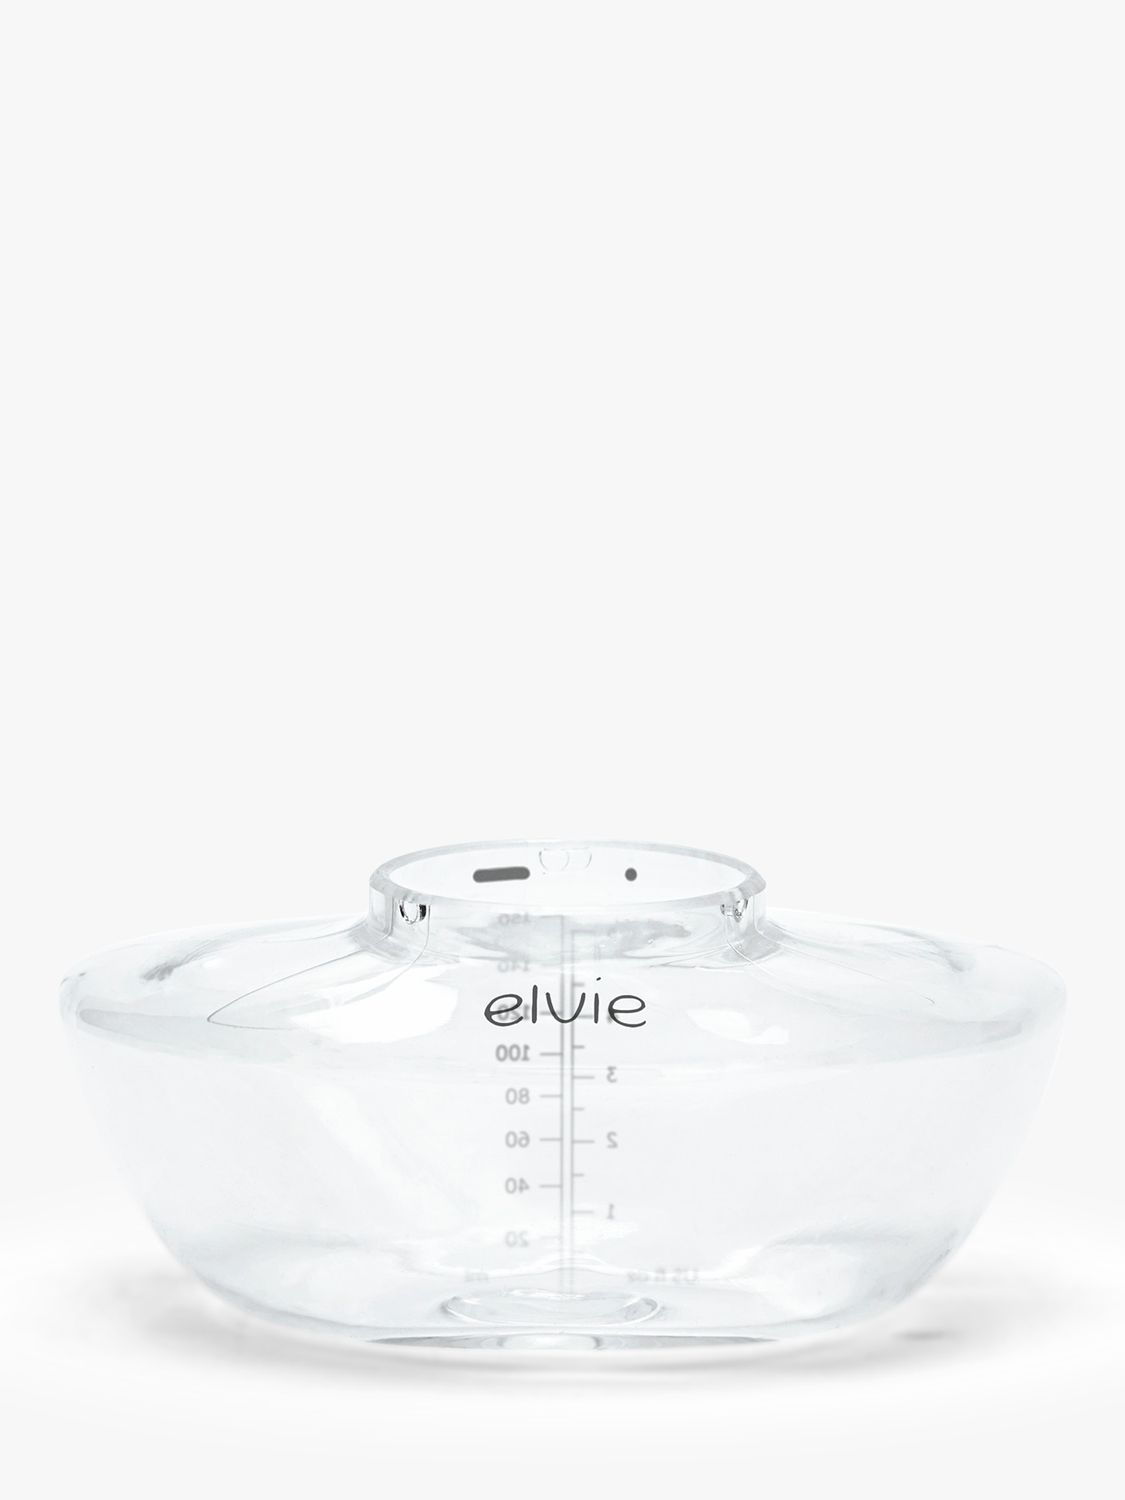 Elvie® 3-Pack 5 oz. Breast Pump Bottles - Clear/Grey, 3 ct - King